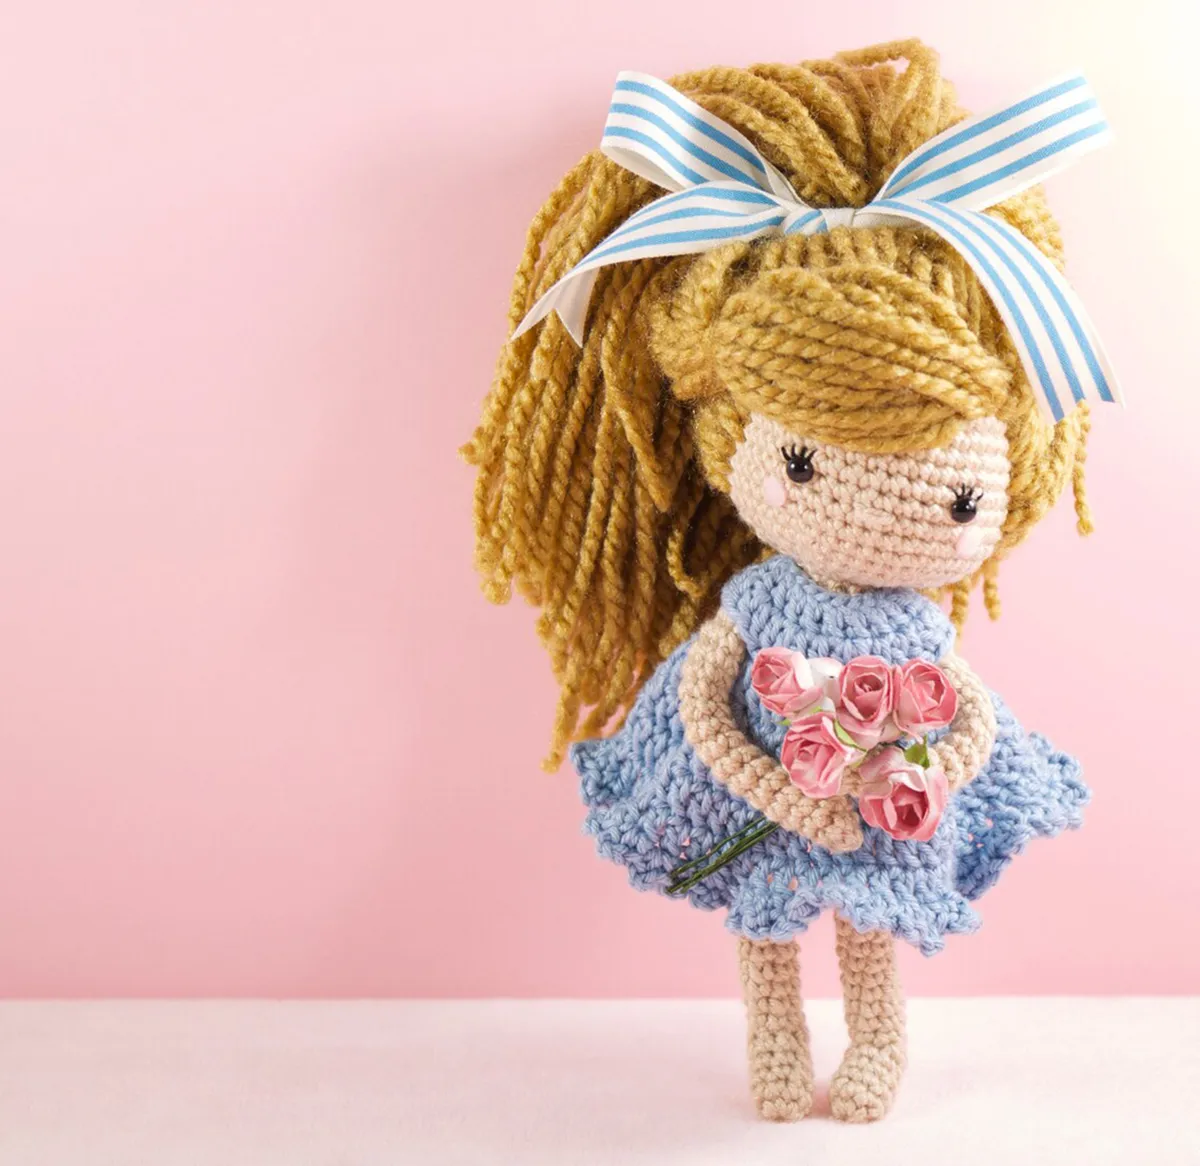 Emmy-Lou crochet doll pattern